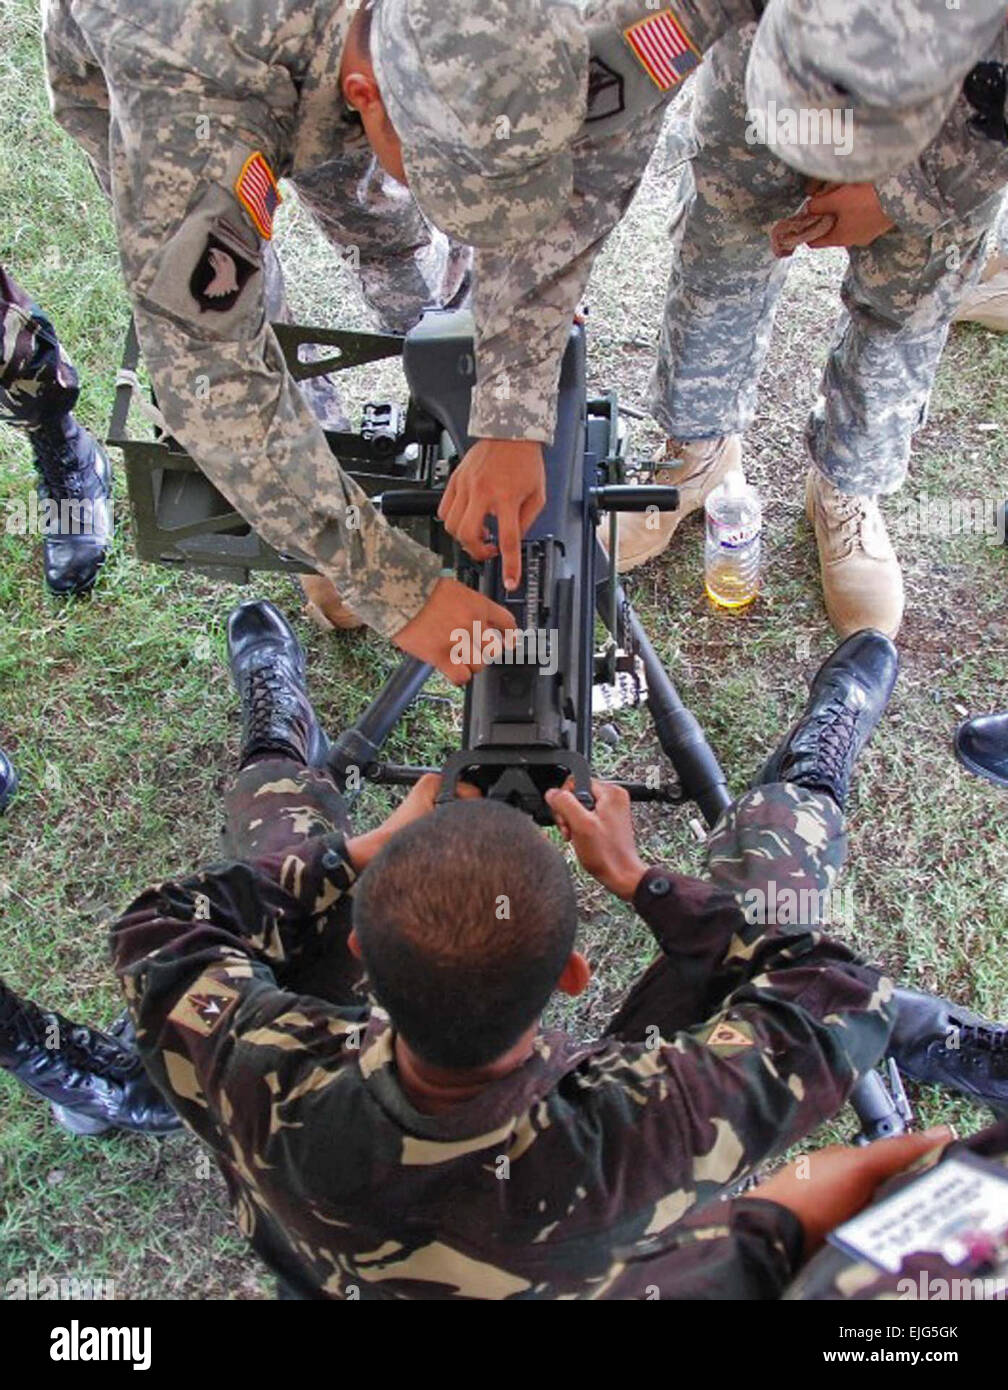 Ft. MAGSAYSAY, Philippinen AP - Soldaten zugewiesen, 1. Bataillon, 294th Infanterie-Regiment, Guam National Guard, weist philippinischen Soldaten wie man richtig eine Maschinengewehr Feuer während der Übung Balikatan 2009.    Die Übung vereint die U.S./Republic von den Philippinen um Bereitschaft im Falle einer Naturkatastrophe zu gewährleisten.        Jährliche Balikatan 2009 Übung am Fort Magsaysay beginnt /-news/2009/04/24/20160-annual-balikatan-2009-exercise-at-fort-magsaysay-begins/index.html Stockfoto